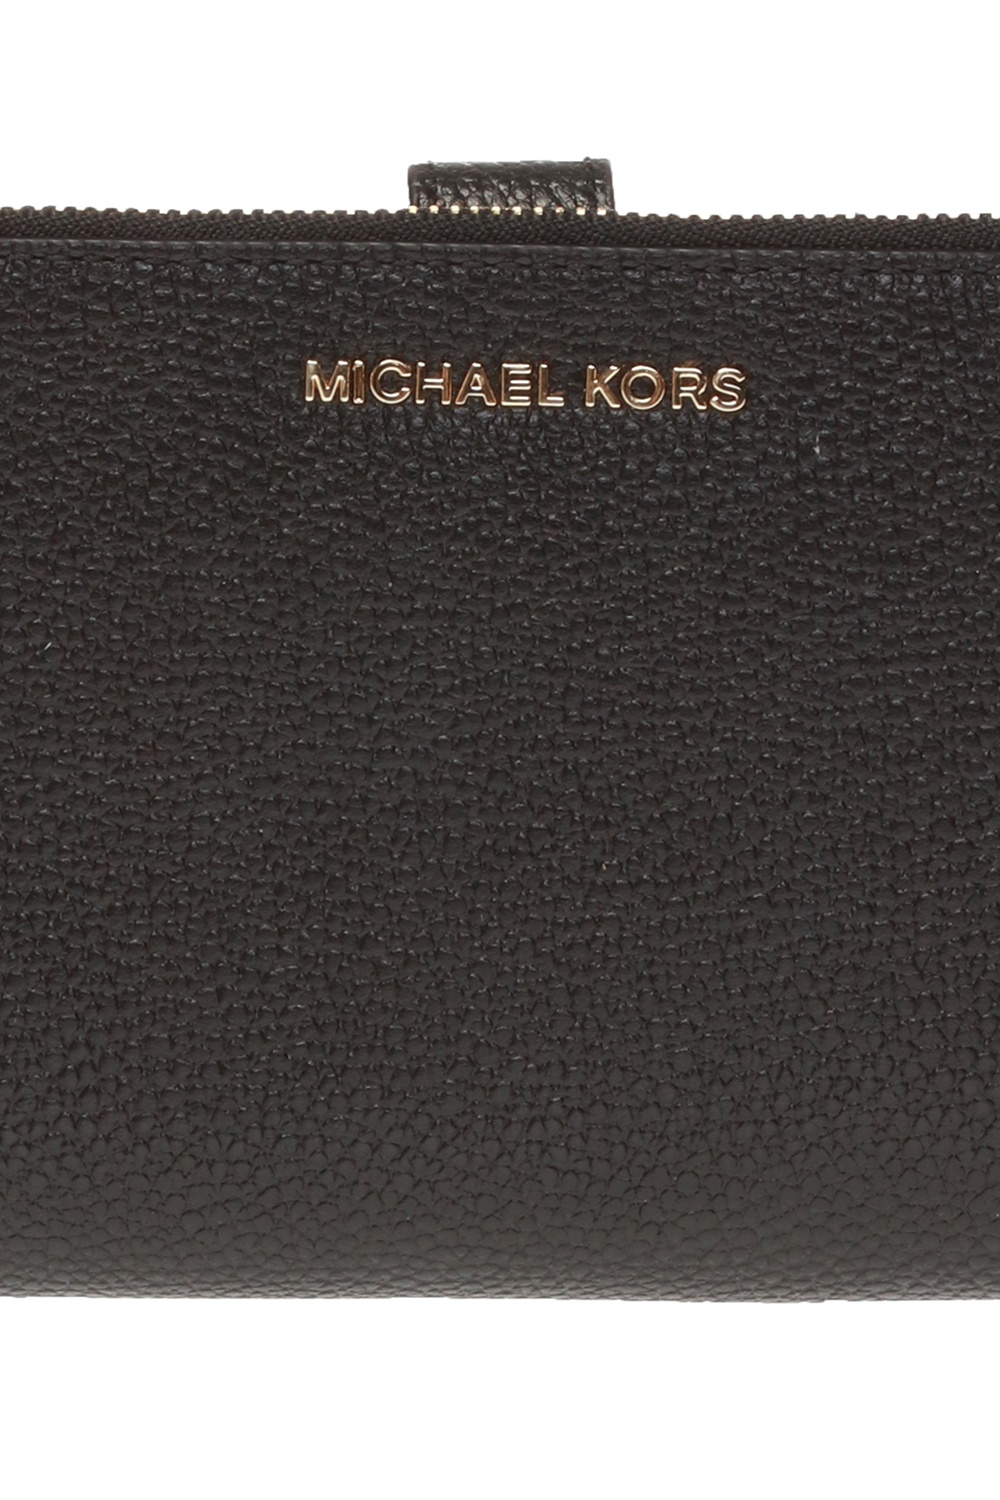 Michael Kors Jet Set Black Leather Billfold Wallet 34F9GAFW4L-001